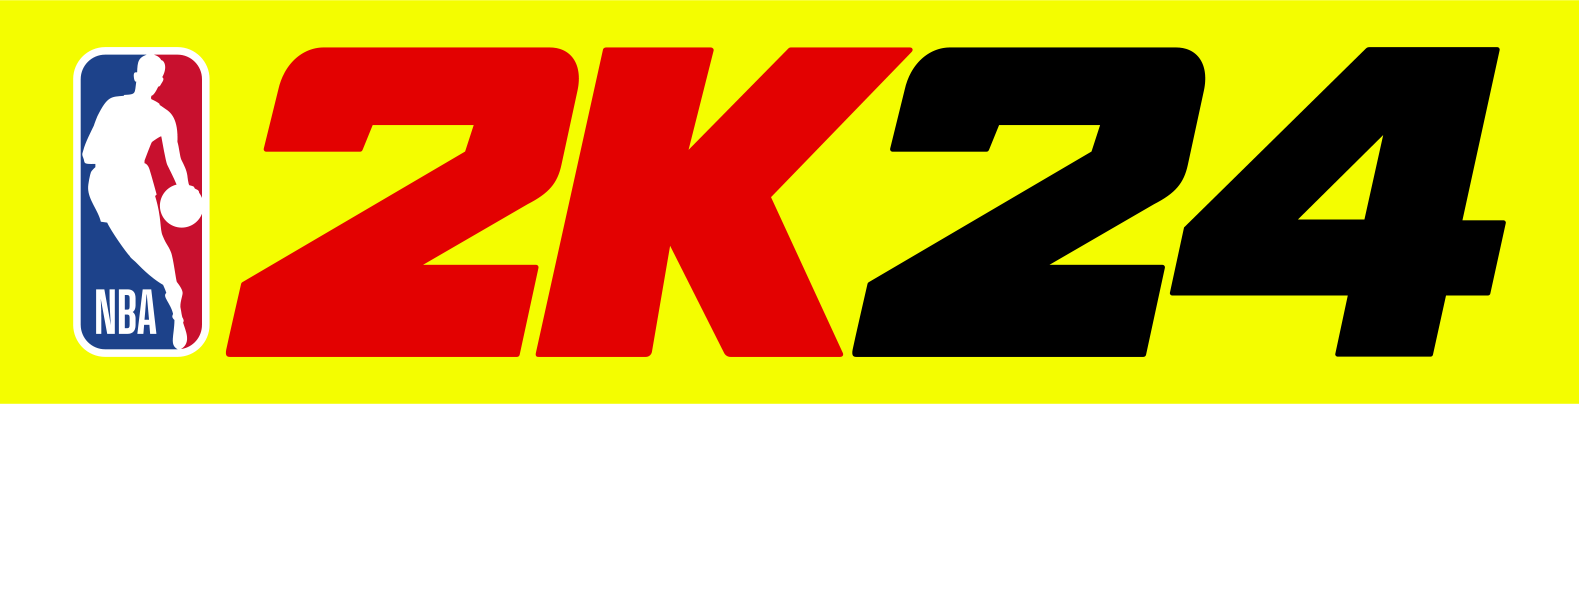 Nba 2k24 Black Mamba Edition - Playstation 5 : Target